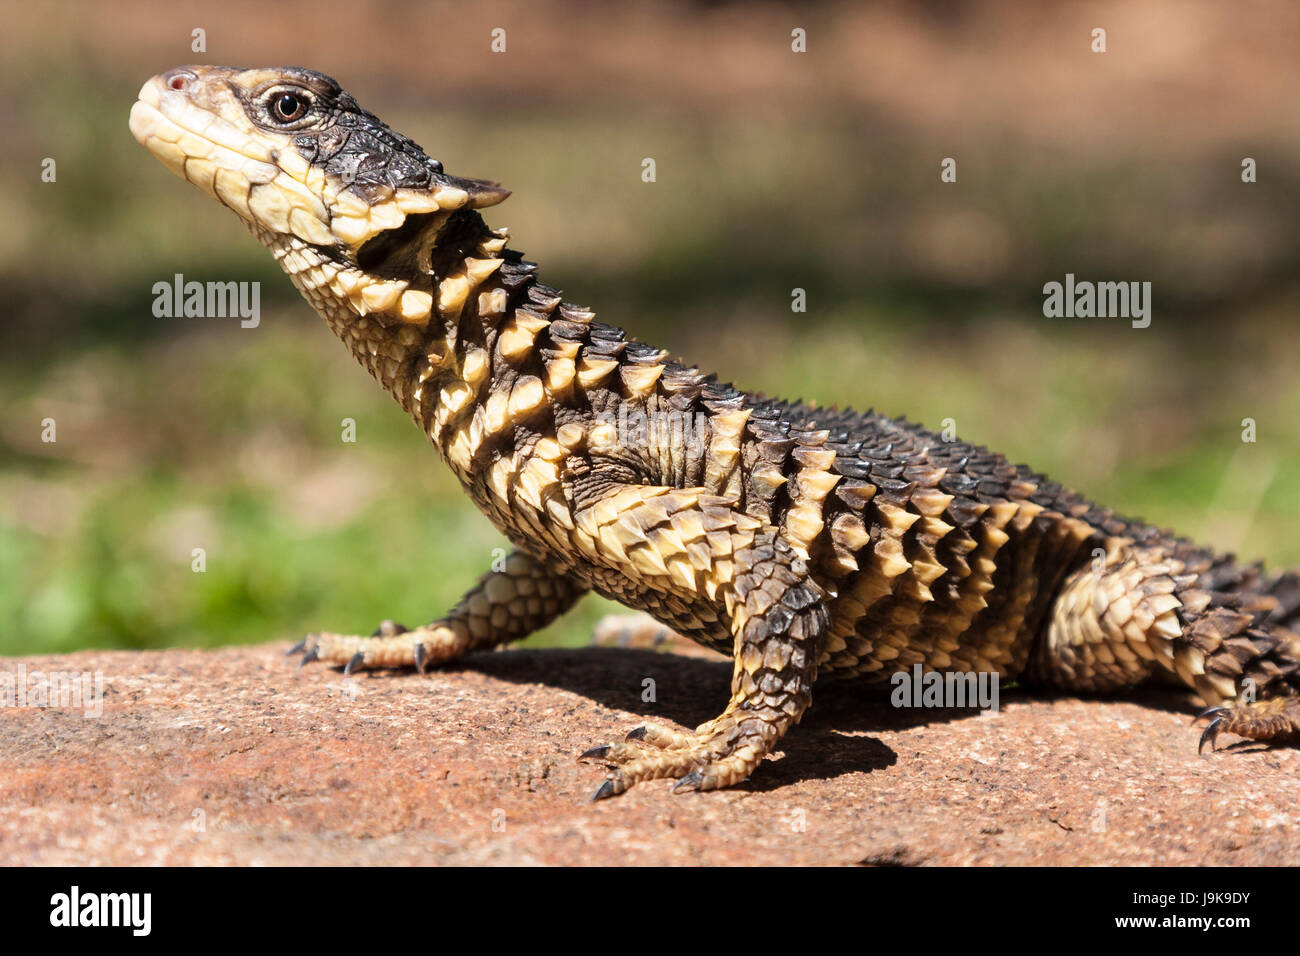 giant girdled lizard (cordylus giganteus) Stock Photo